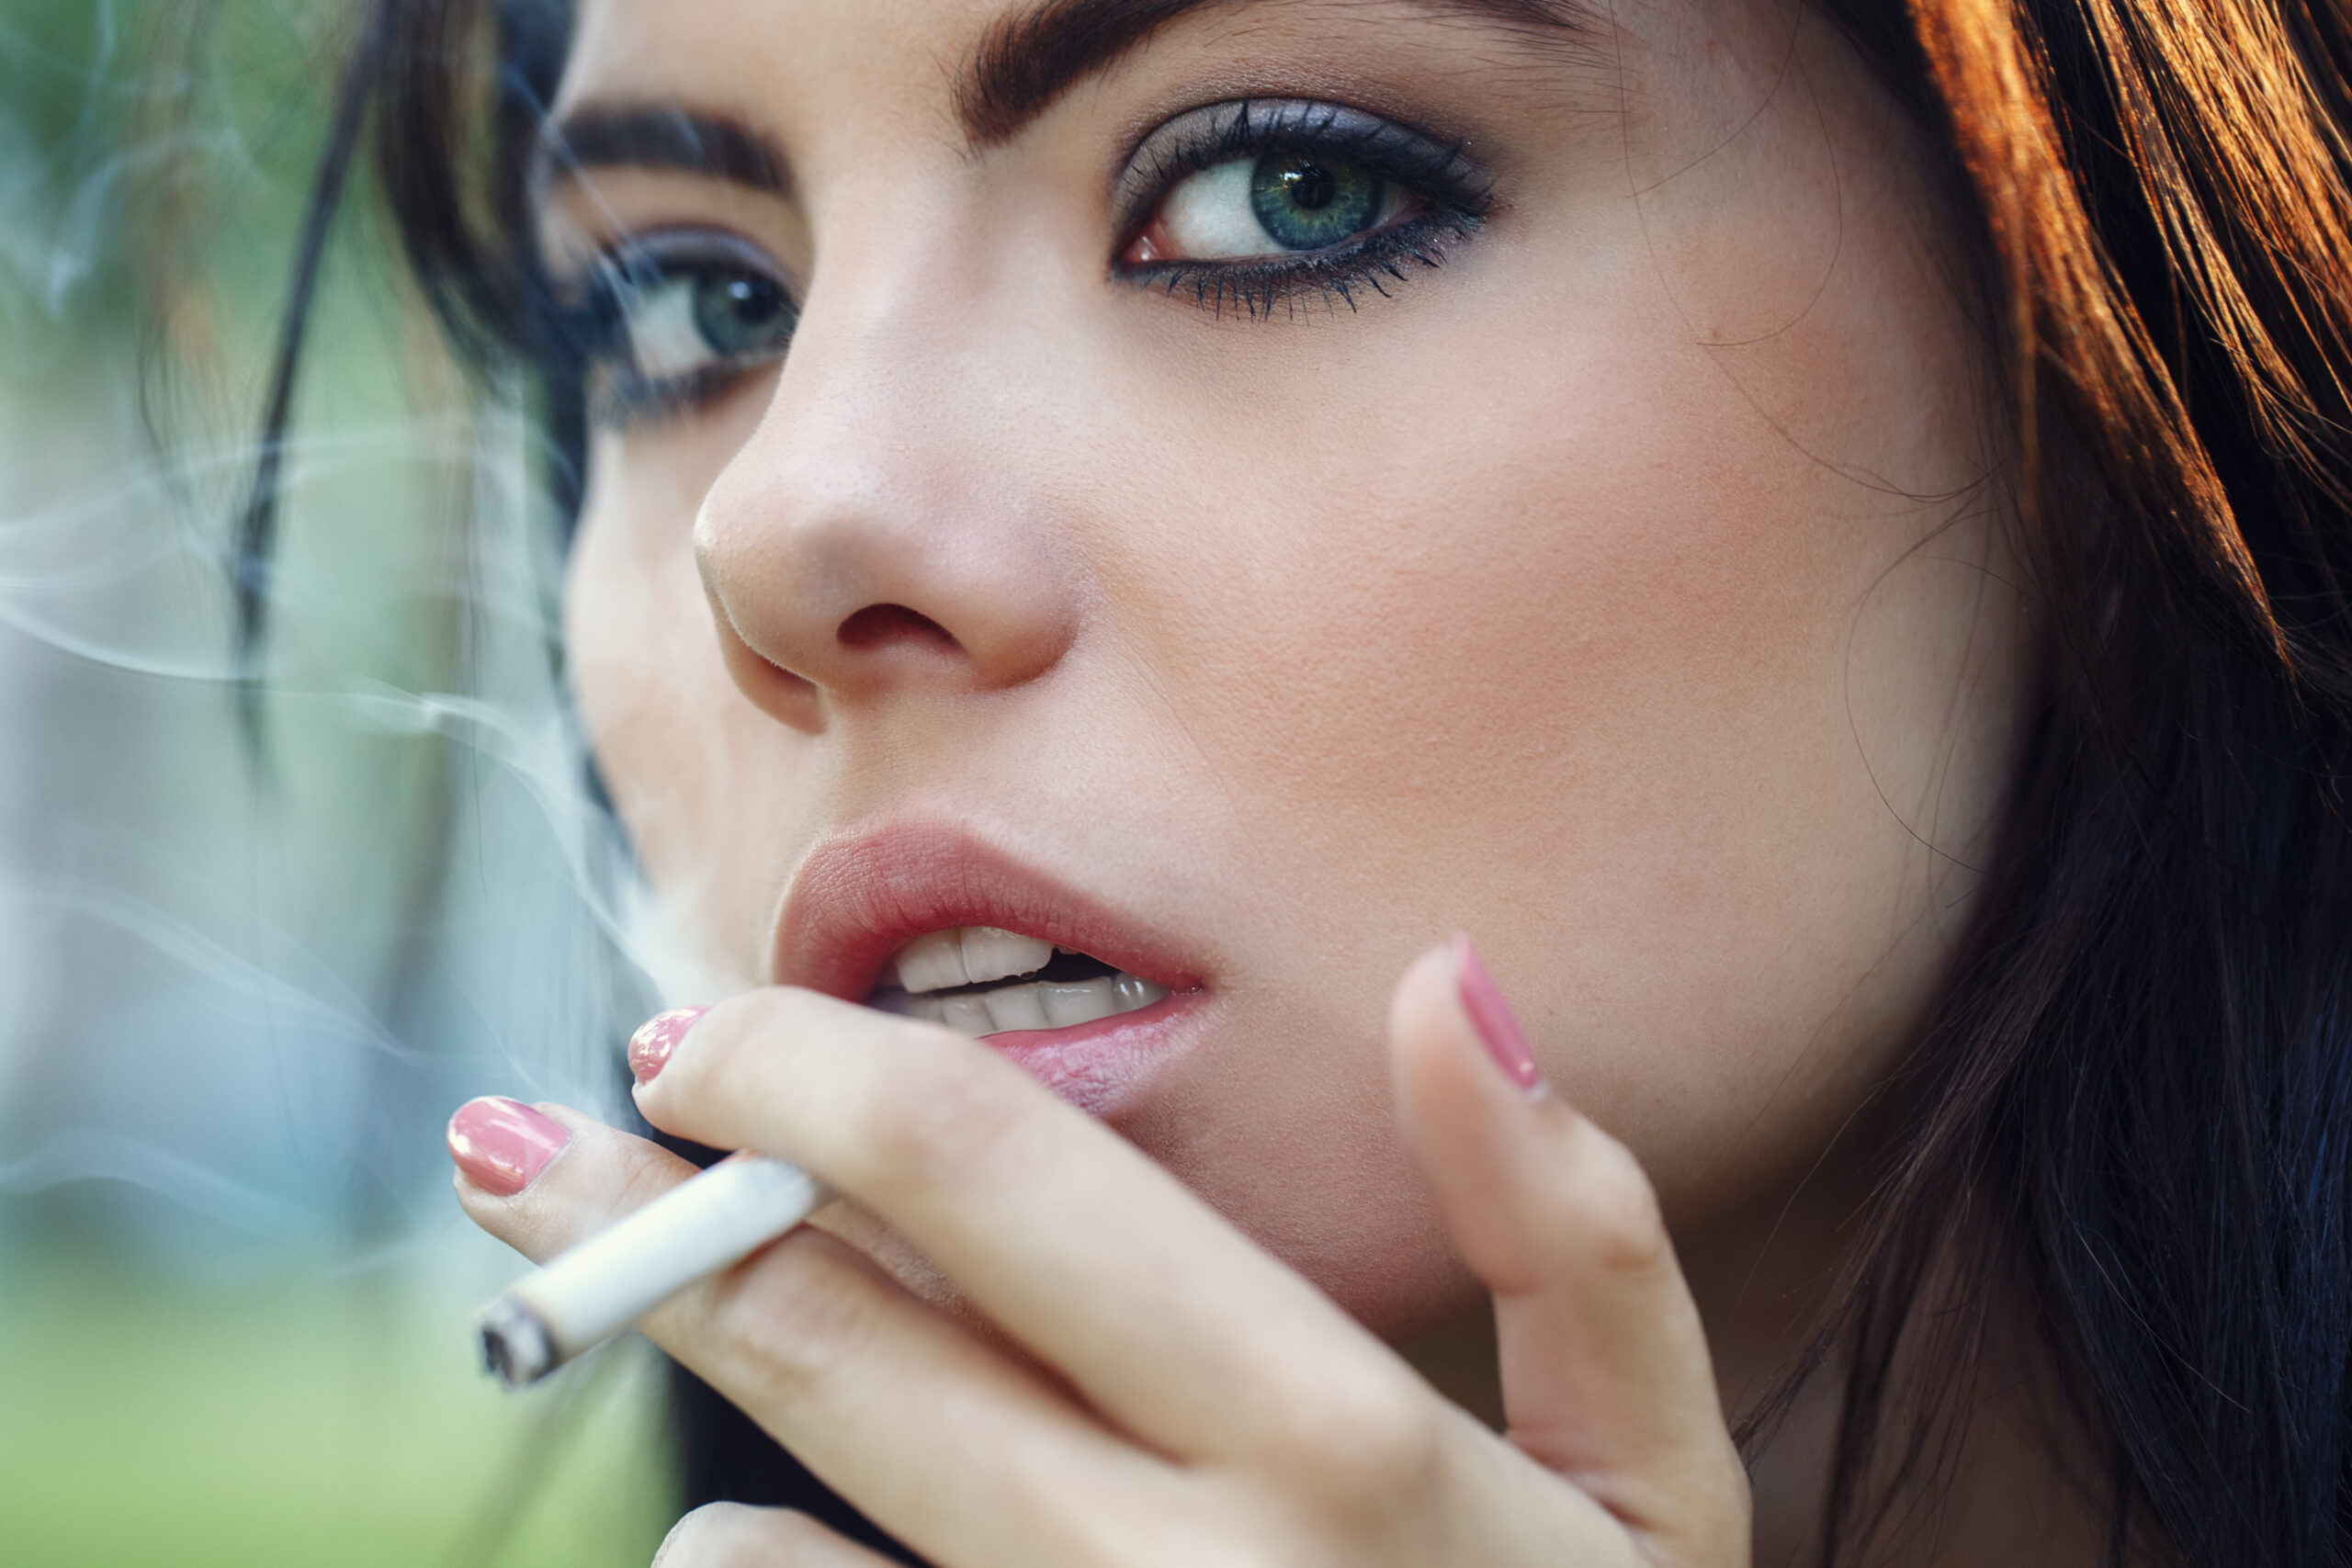 Female tobacco user cigarette smoker